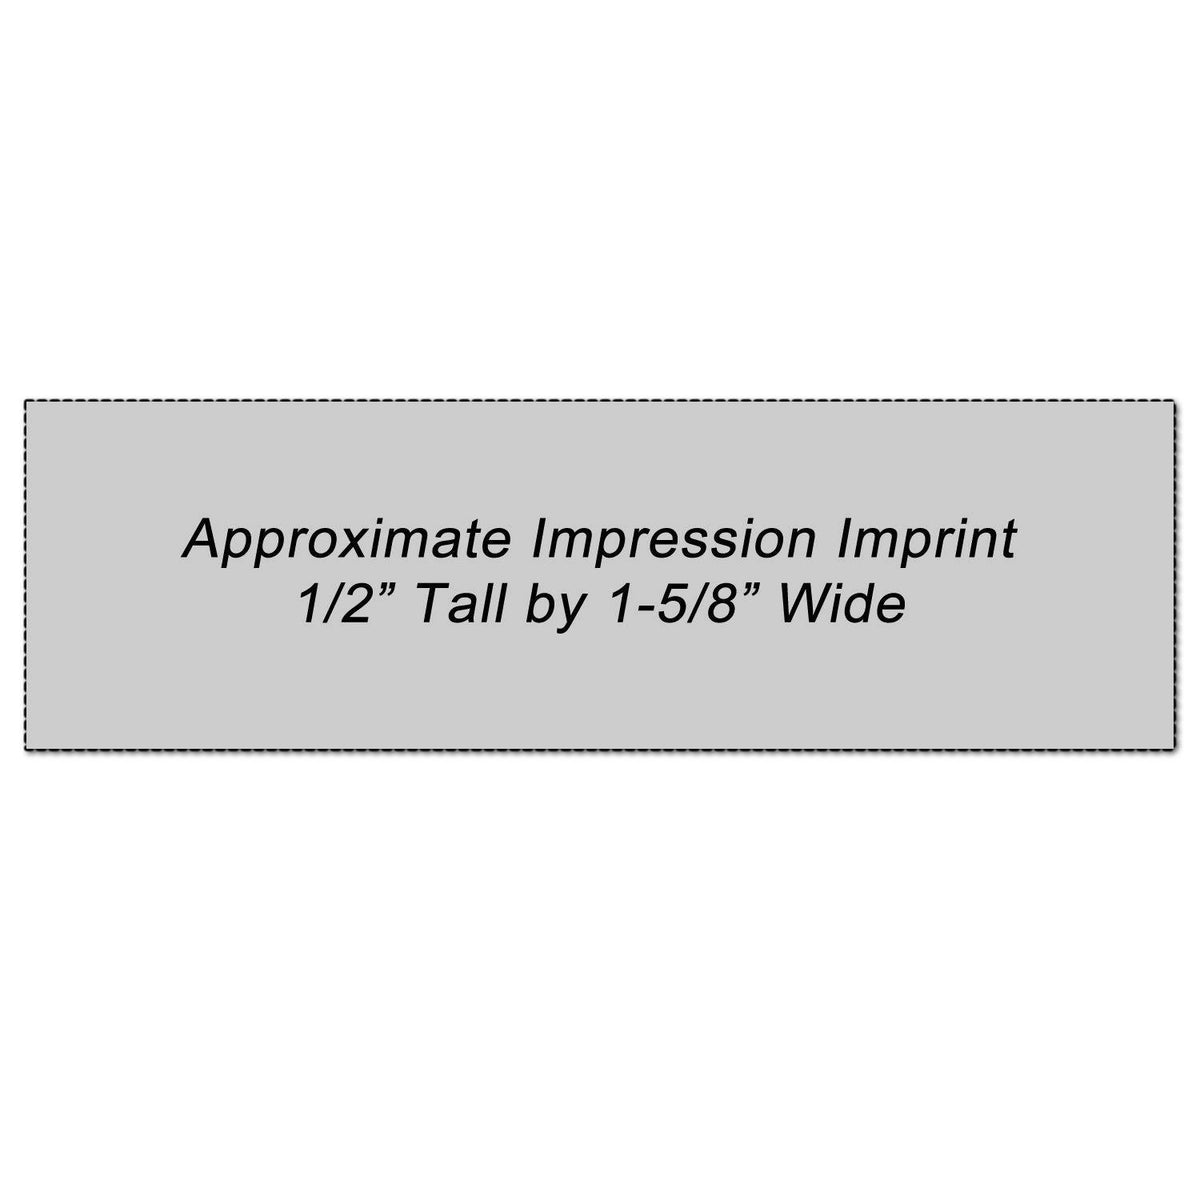 Red File Copy Xstamper Stamp Impression Size